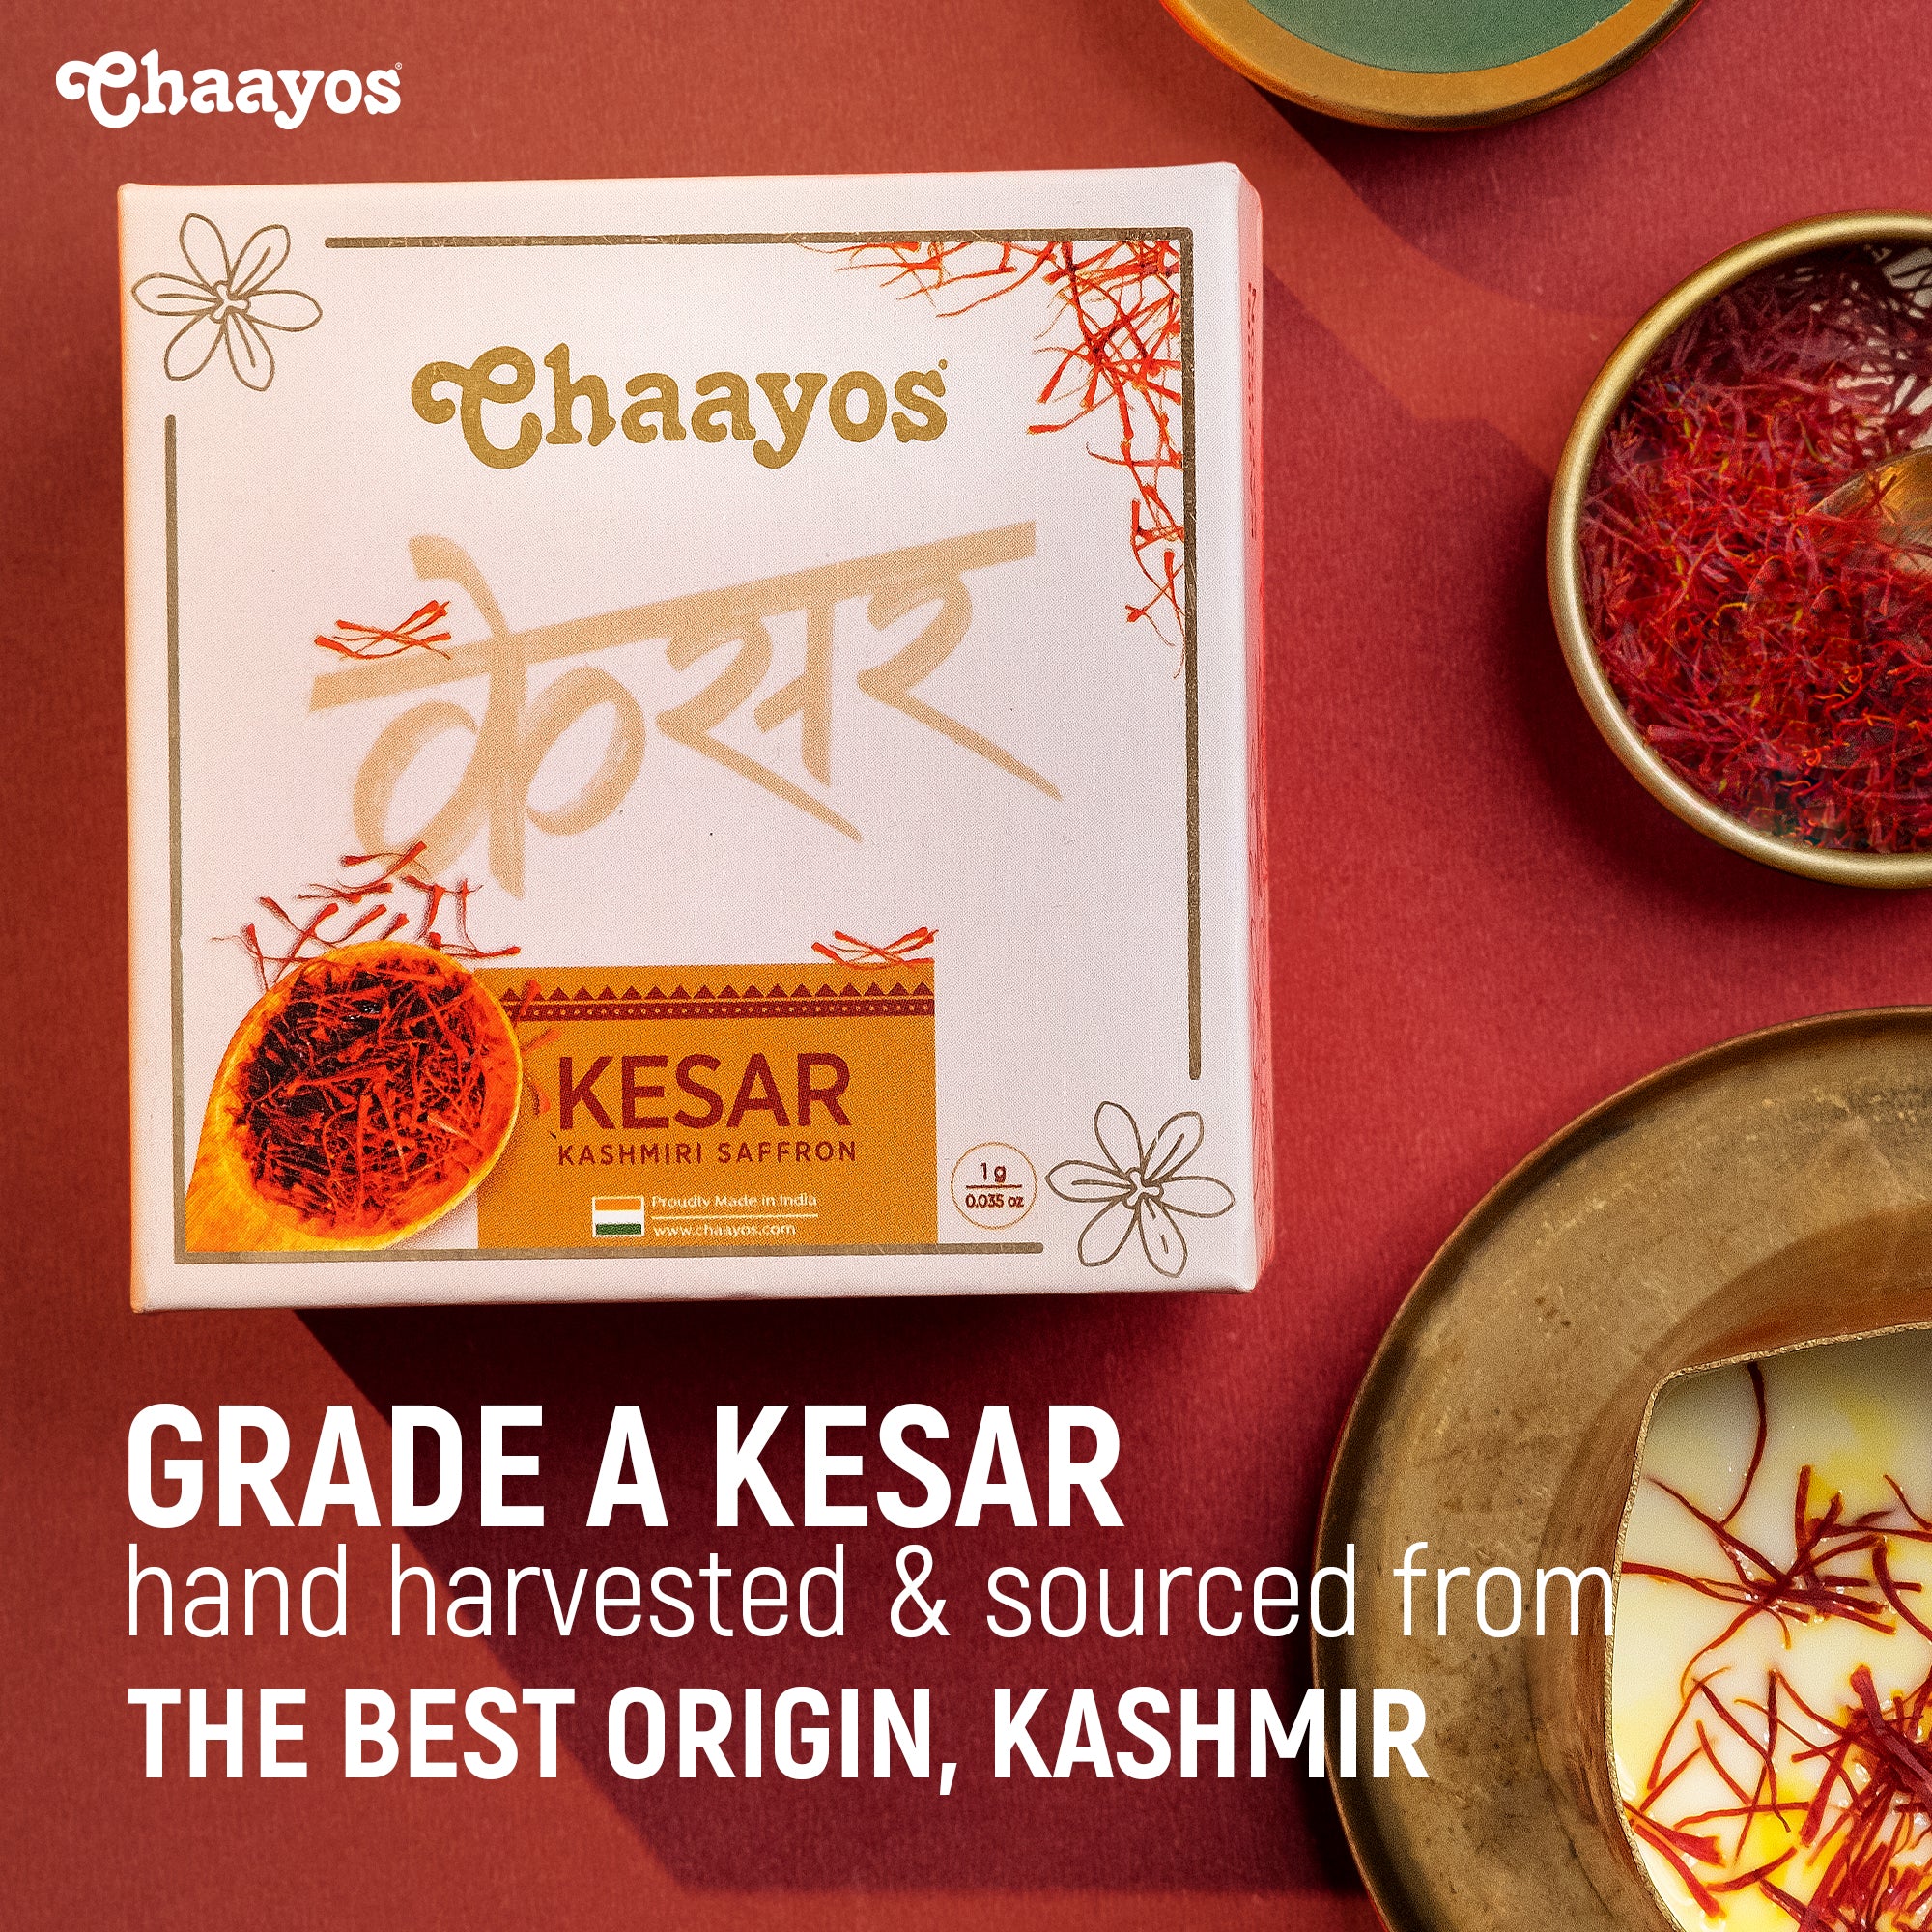 Kashmiri Saffron (1g) - Pure A++ Grade Kesar